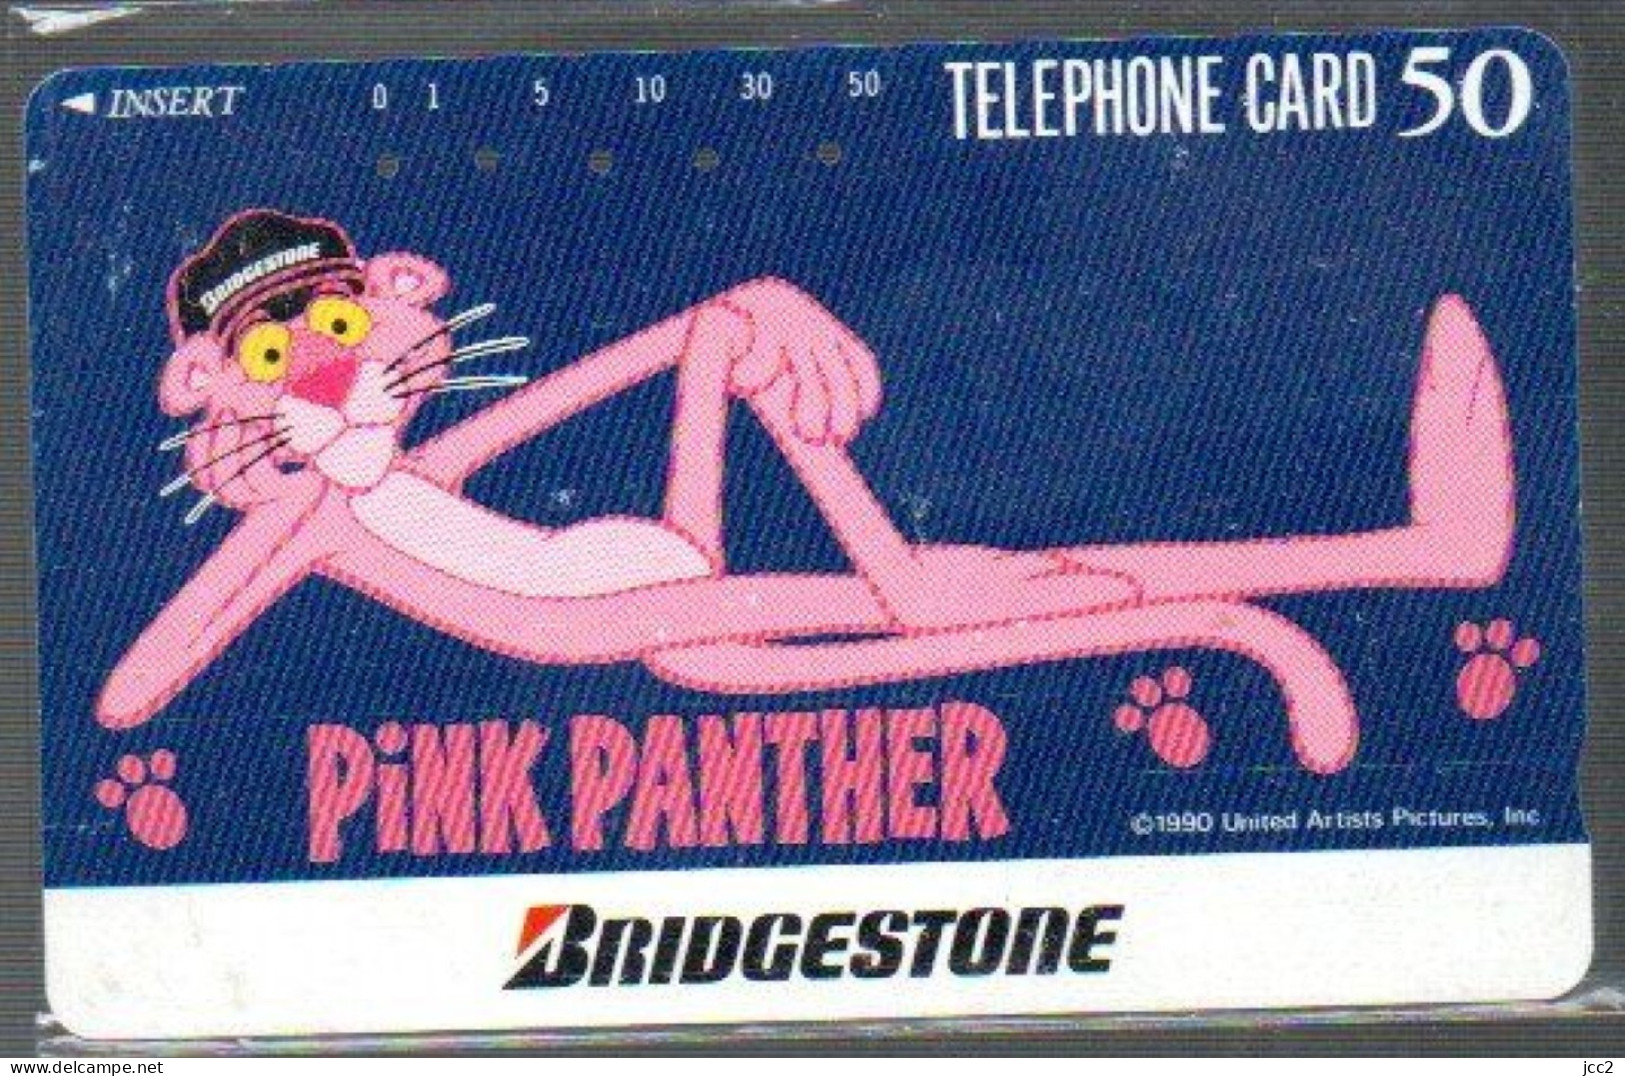 Pink Panther - BD